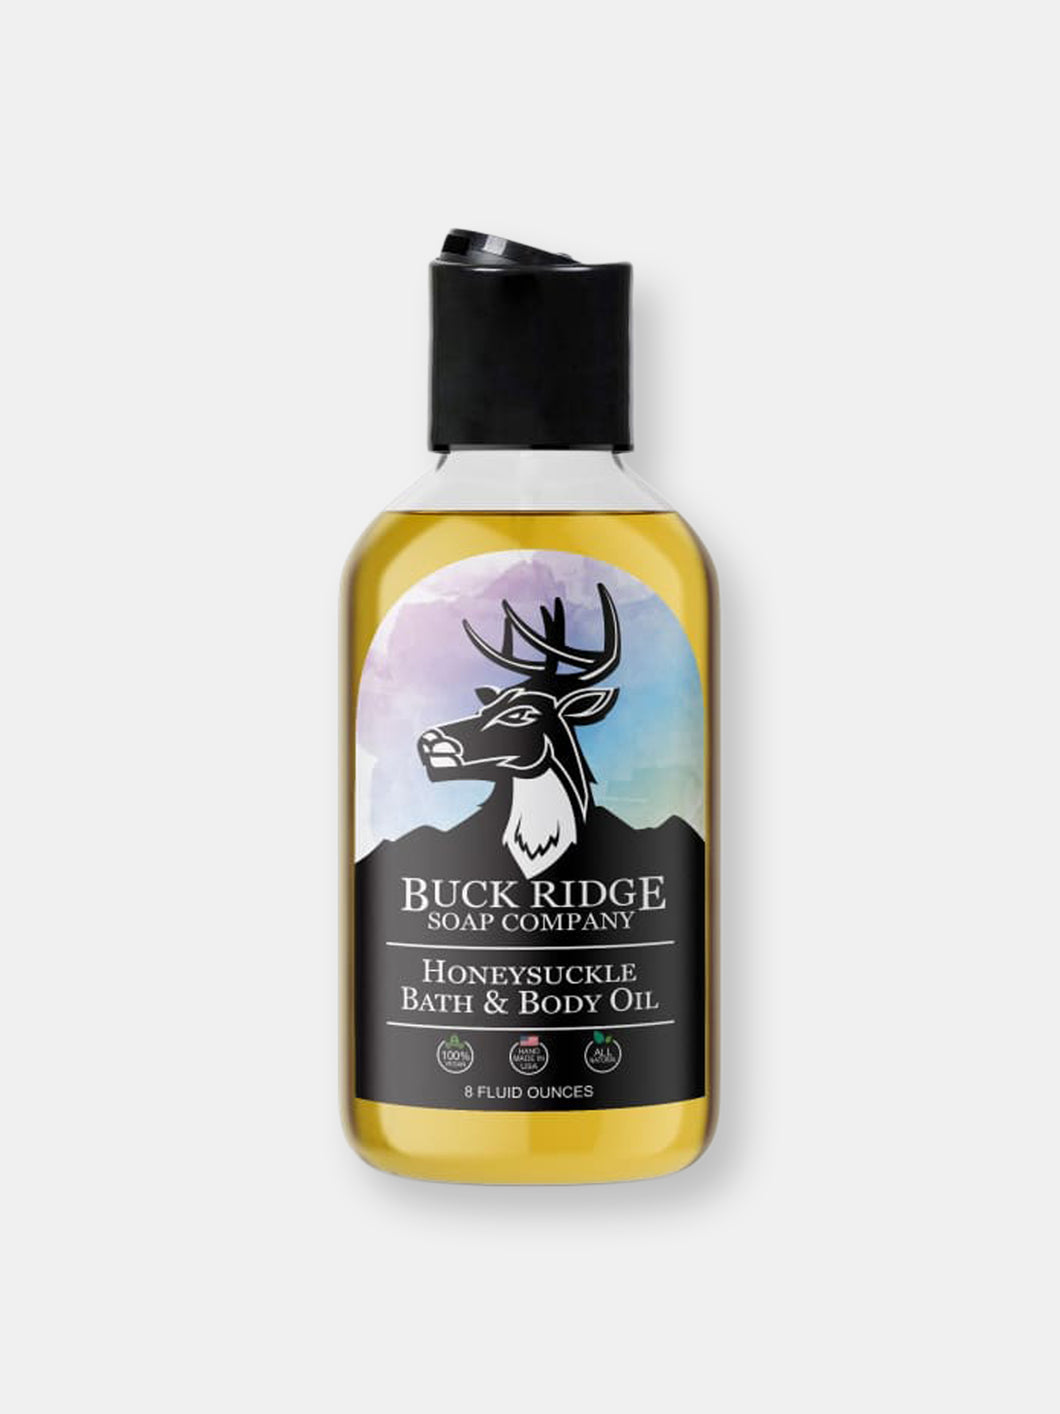 Honeysuckle Bath and Body Oil